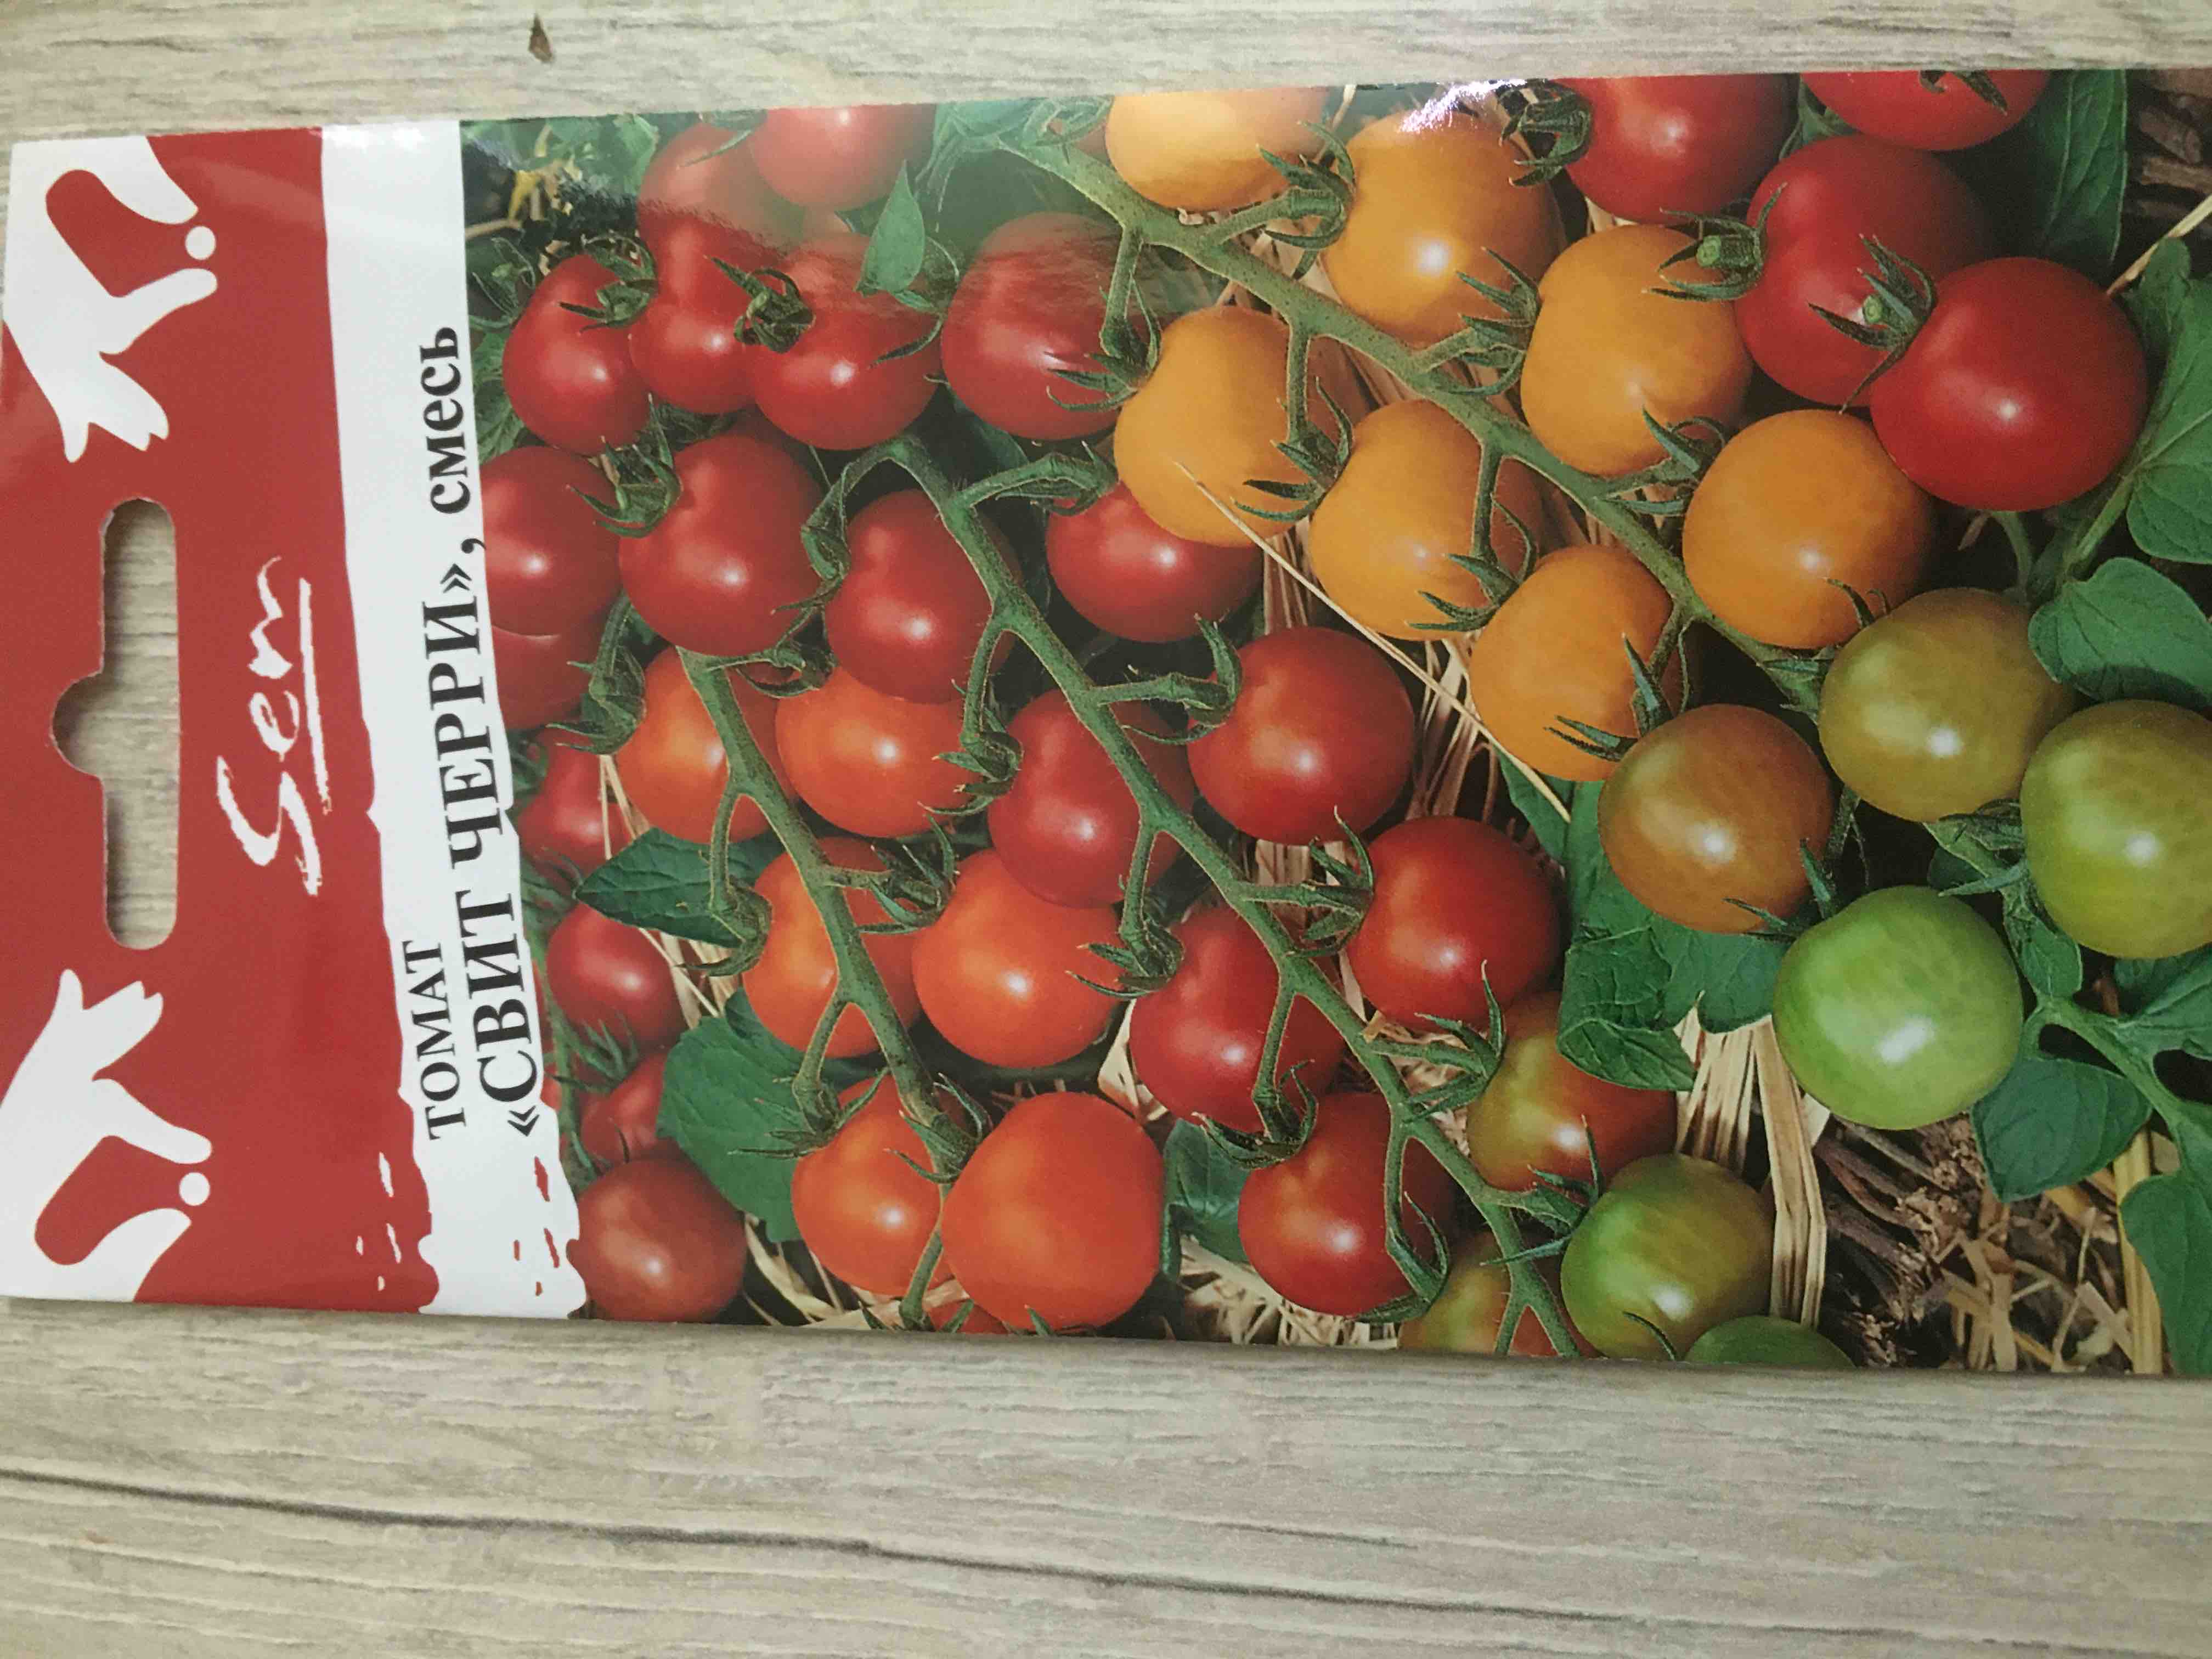 Семена томат Русский огород Свит Черри 319327 1 уп. - отзывы покупателей наМегамаркет